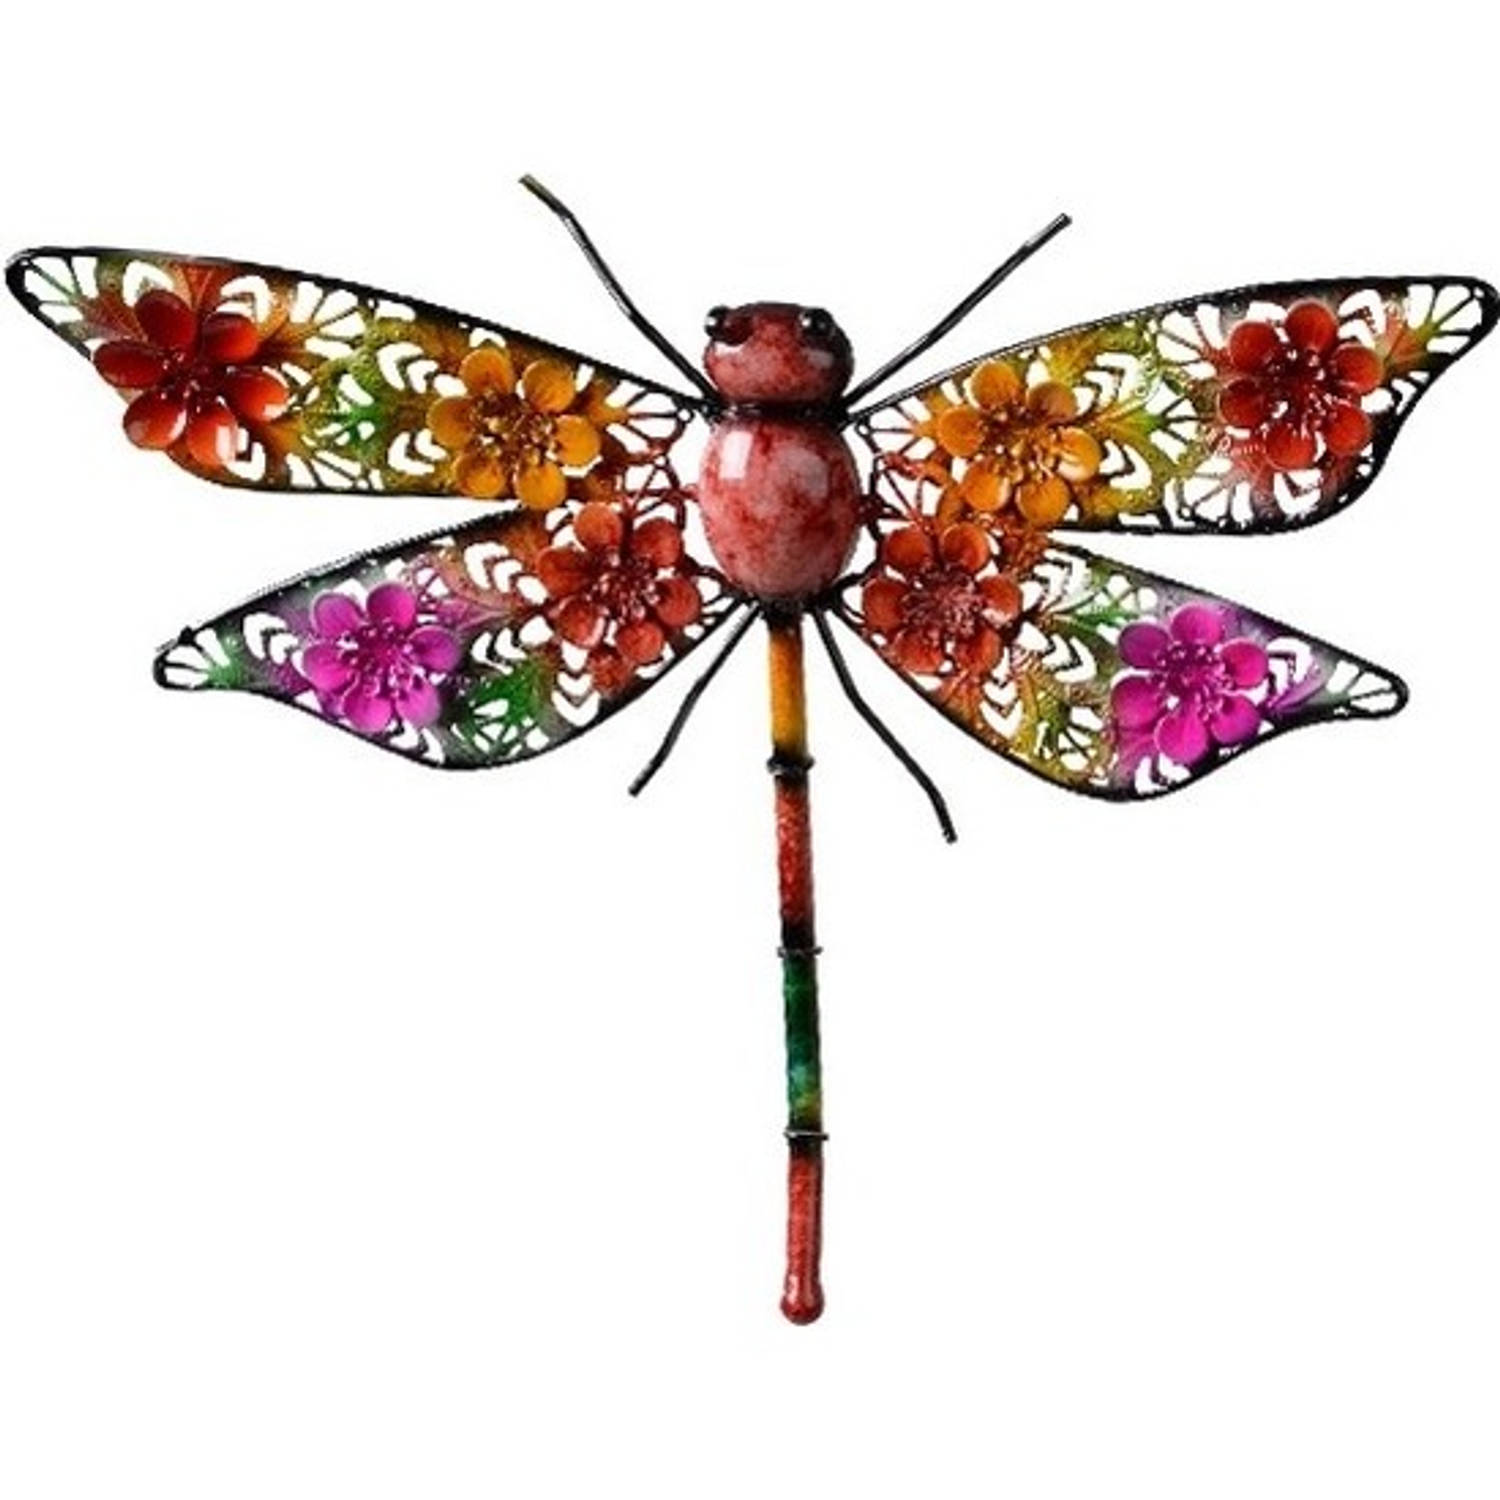 Gekleurde metalen tuindecoratie libelle hangdecoratie 27 x 33 cm cm - Tuinbeelden